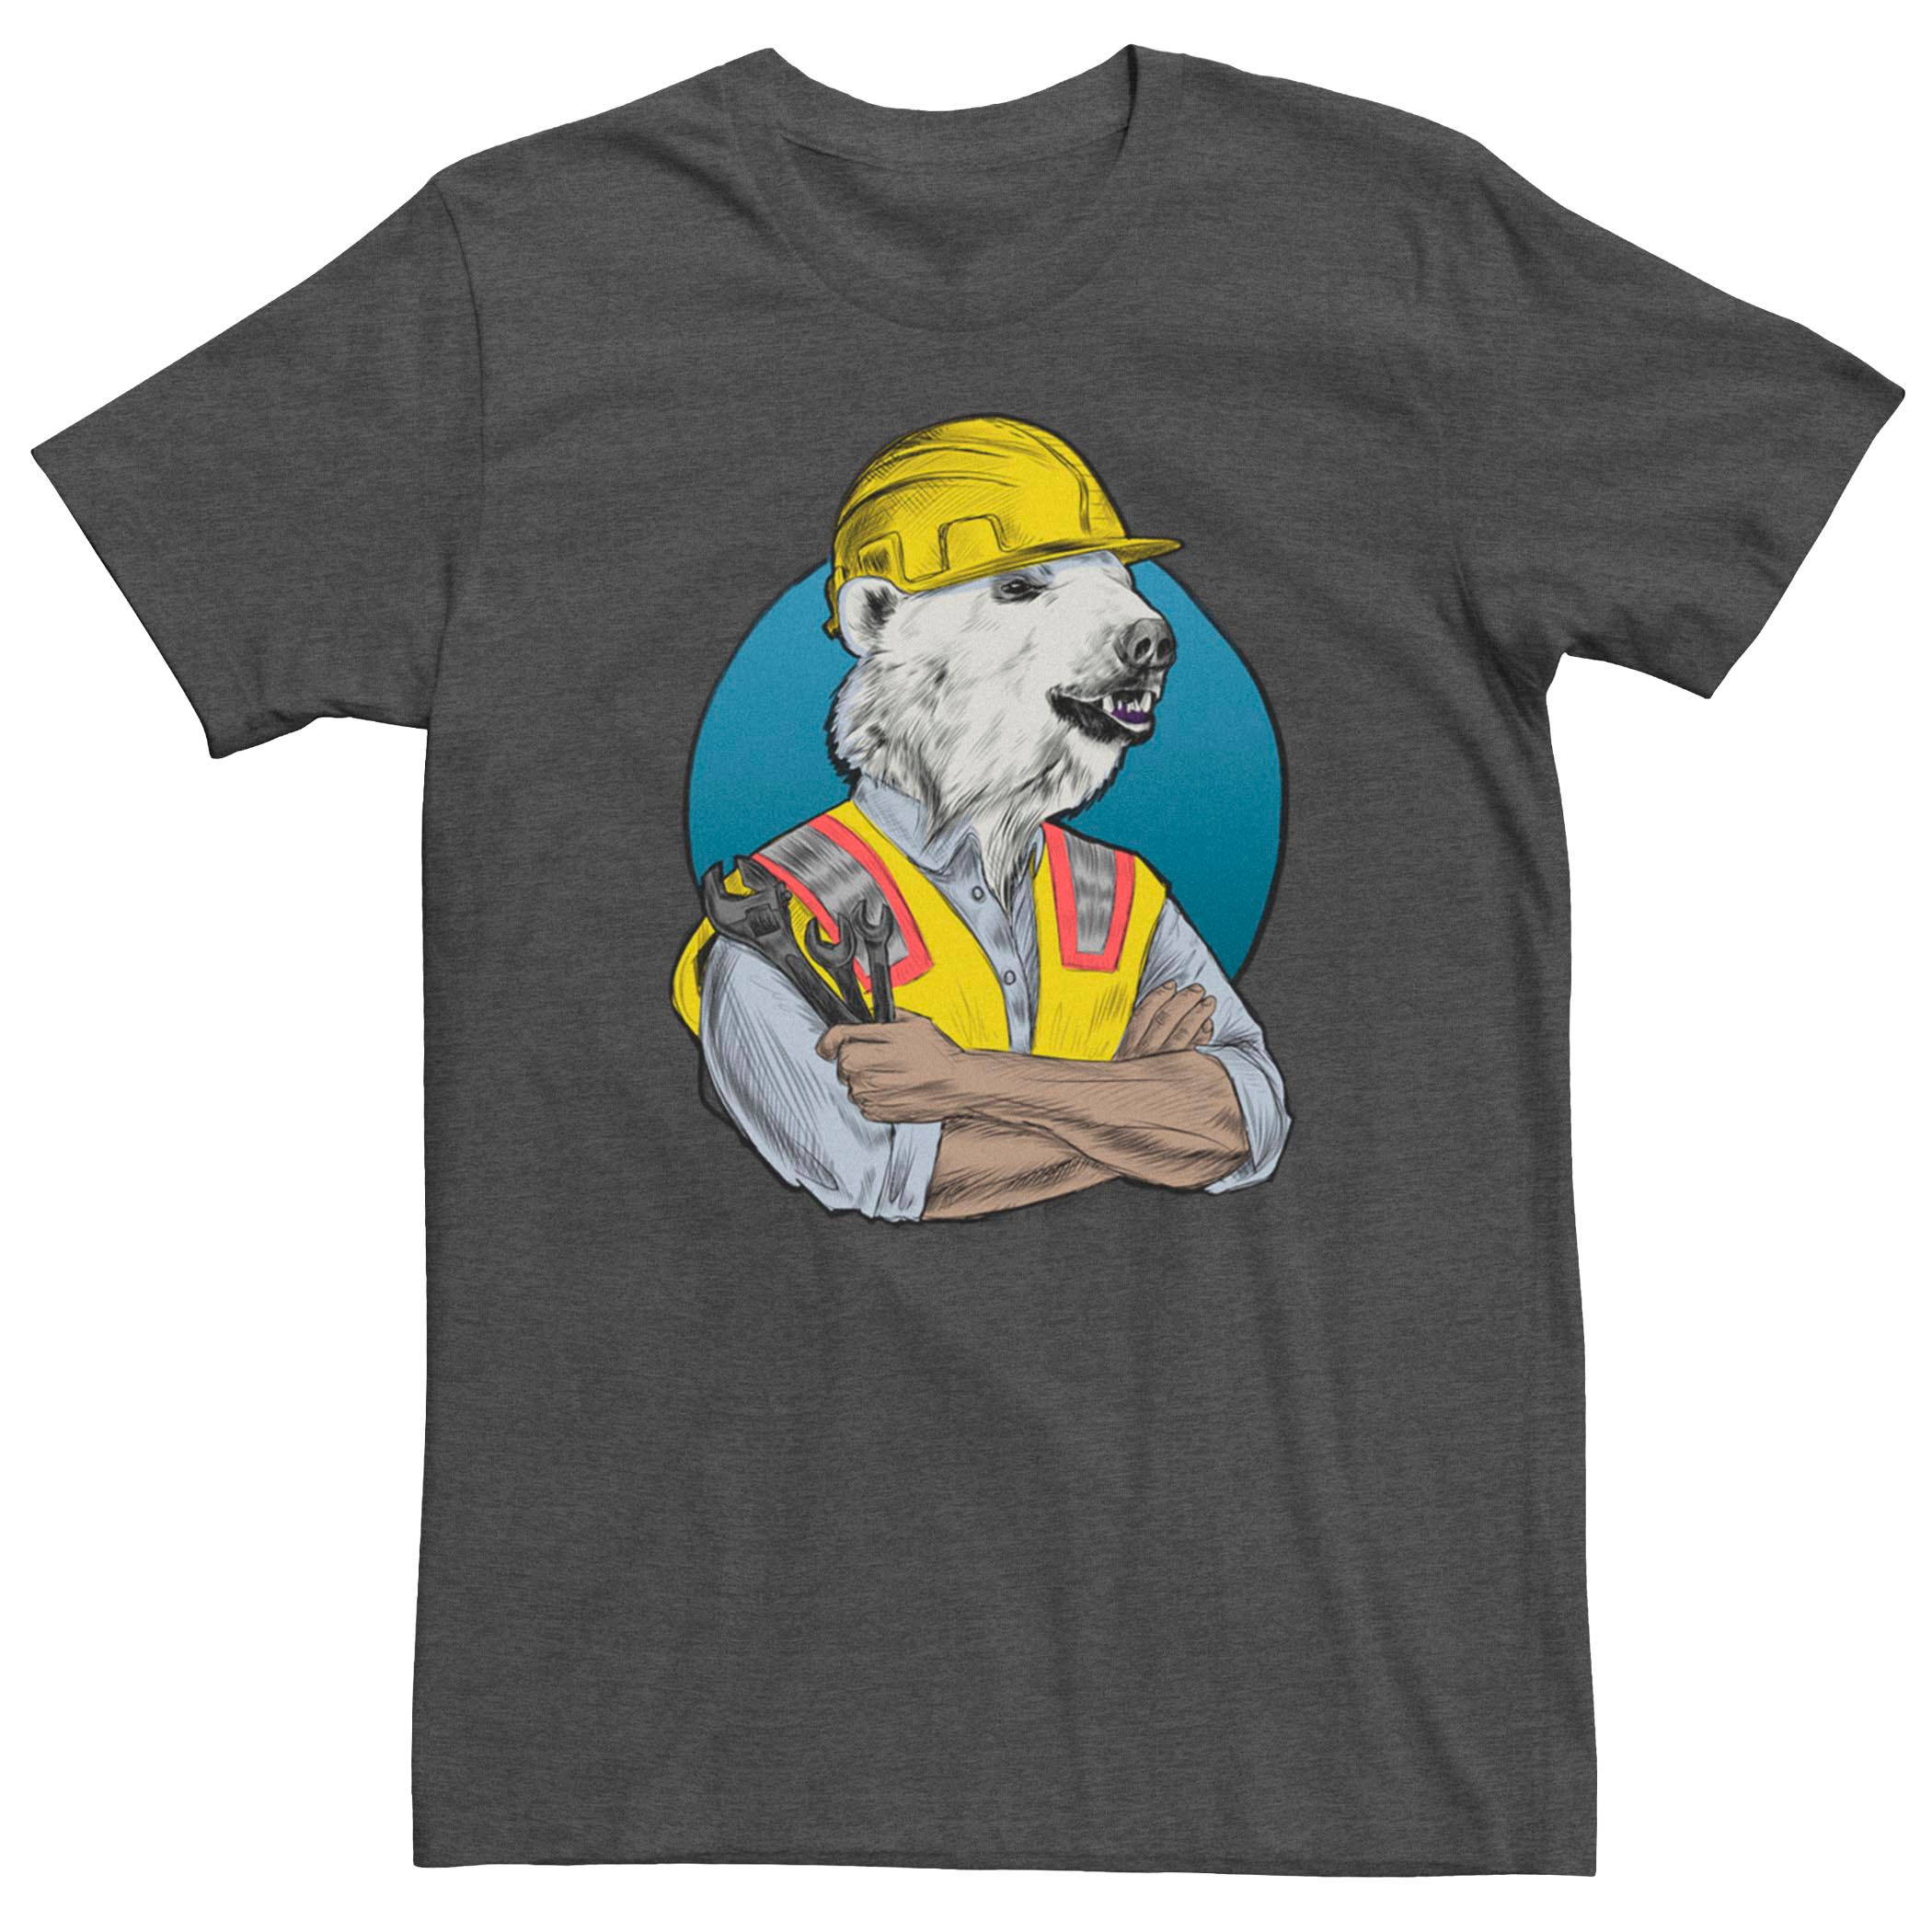 Мужская футболка с рисунком строителя Fifth Sun